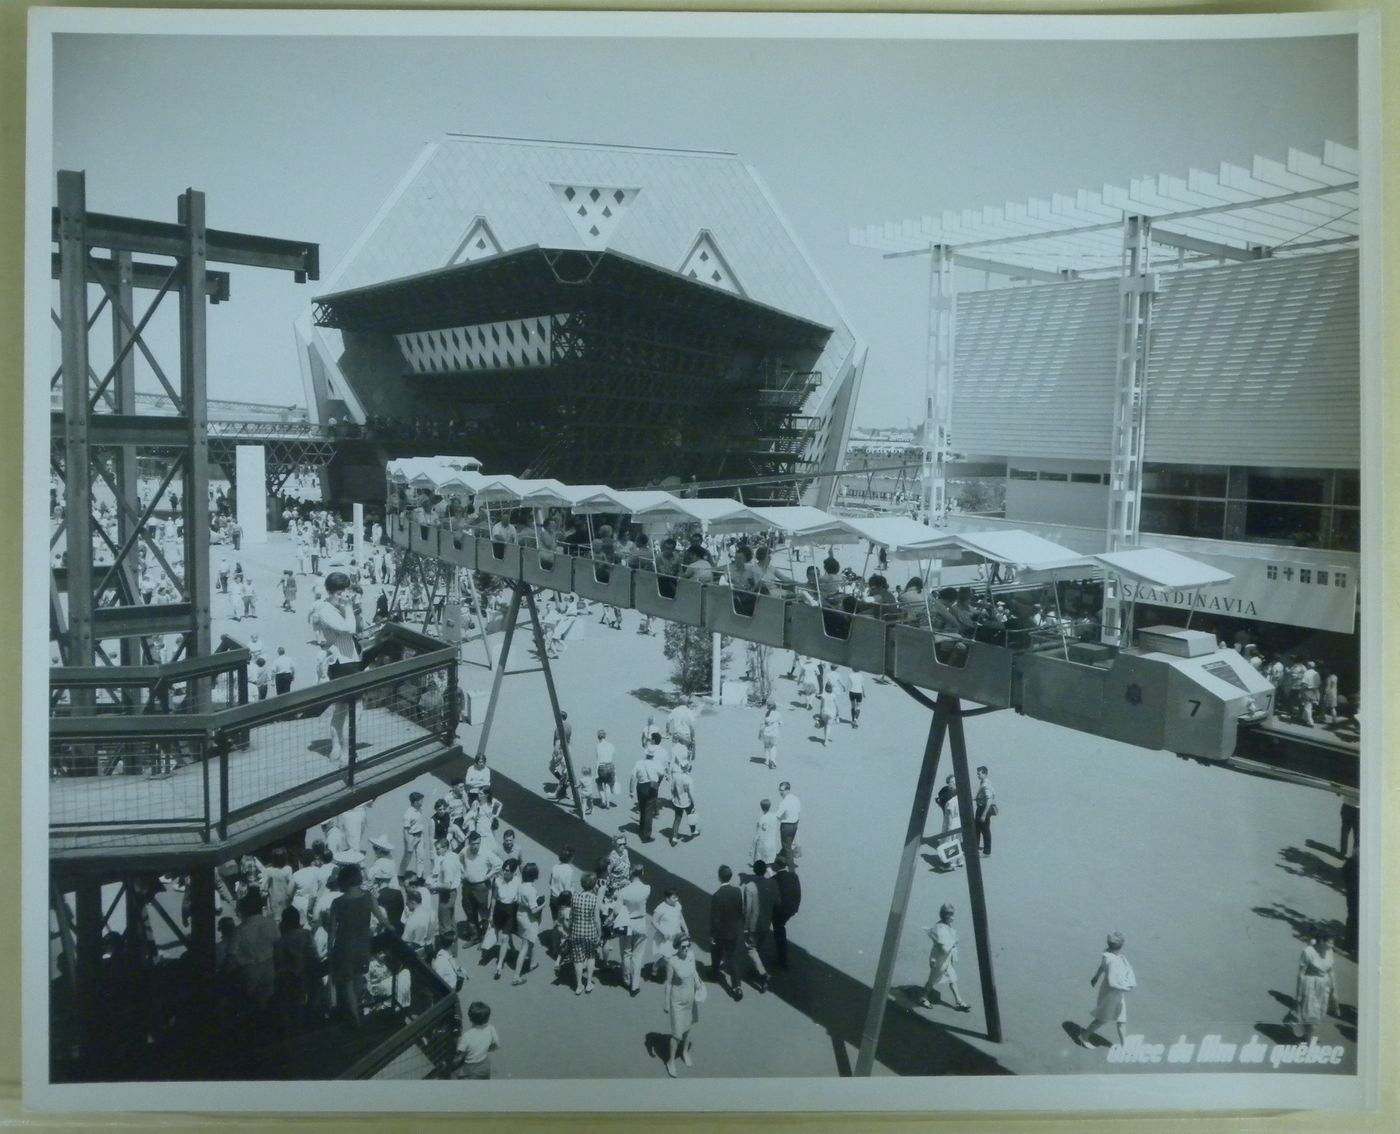 View of the minirail with Man the Explorer and Scandinavian Pavilions, Expo 67, Montréal, Québec